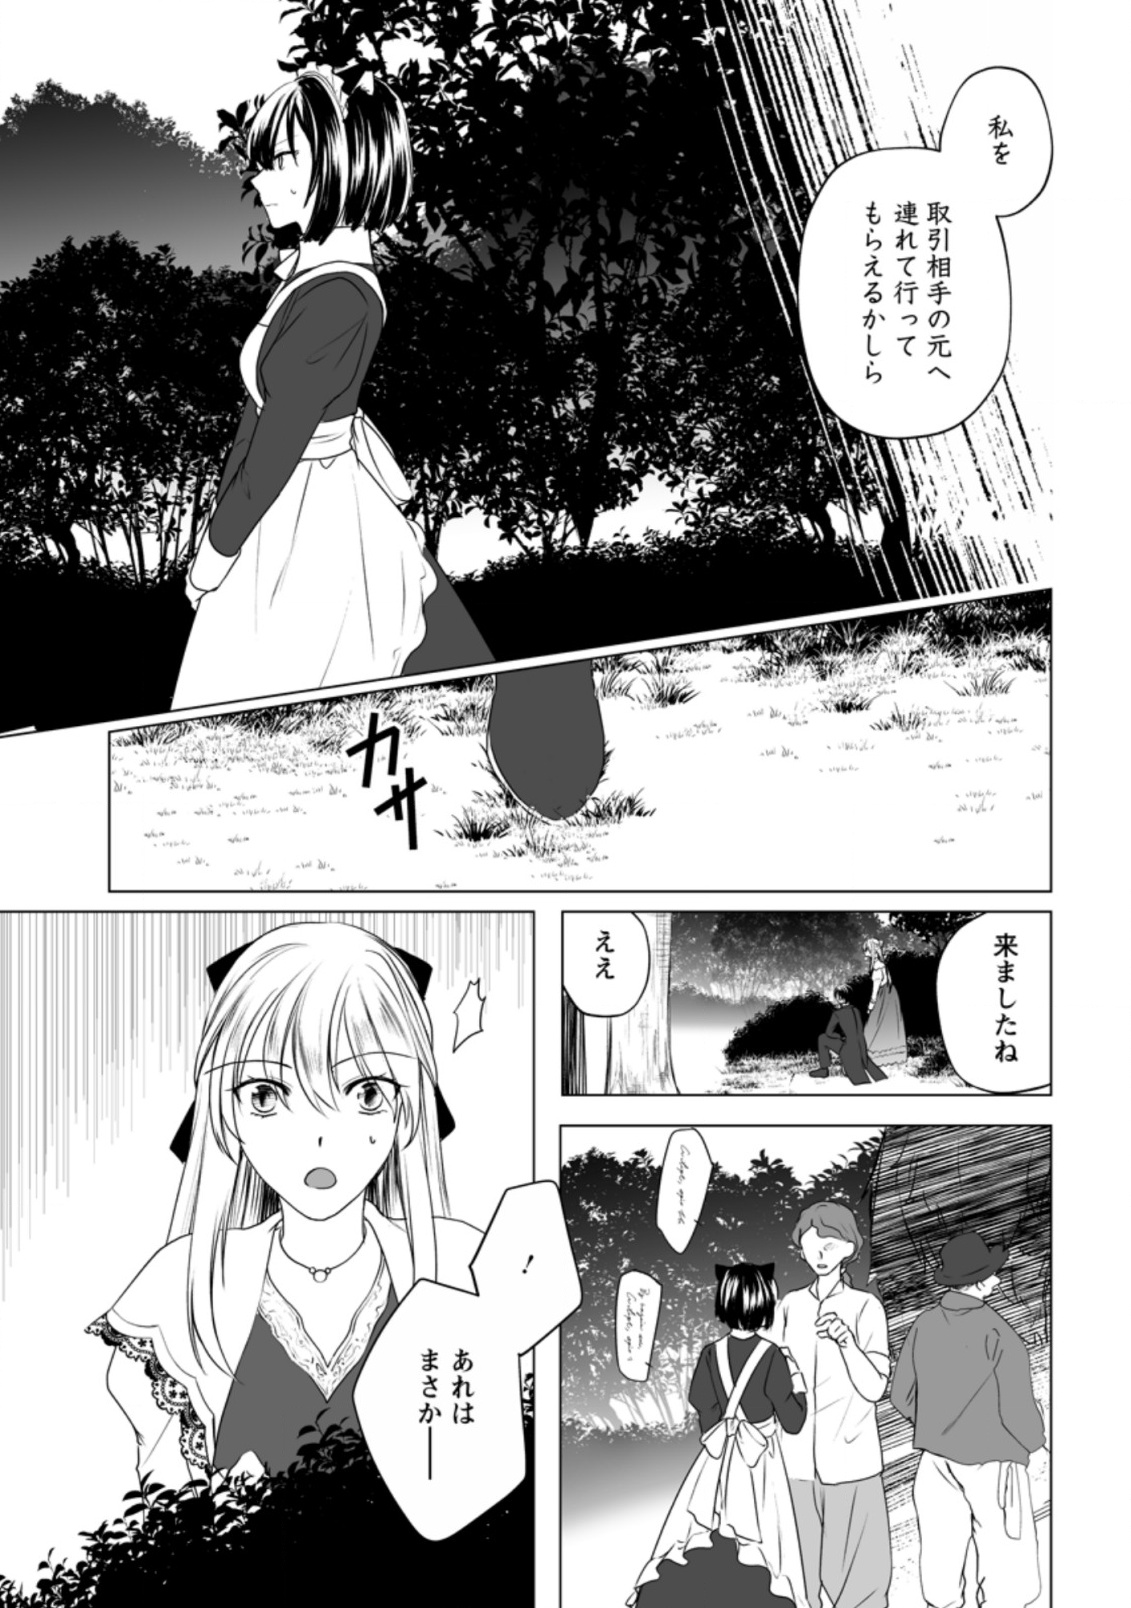 Tenseisaki de Suterareta no de, Mofumofu-tachi to Oryouri shimasu: Okazari Ouhi wa My Pace ni Saikyou desu - Chapter 8 - Page 11